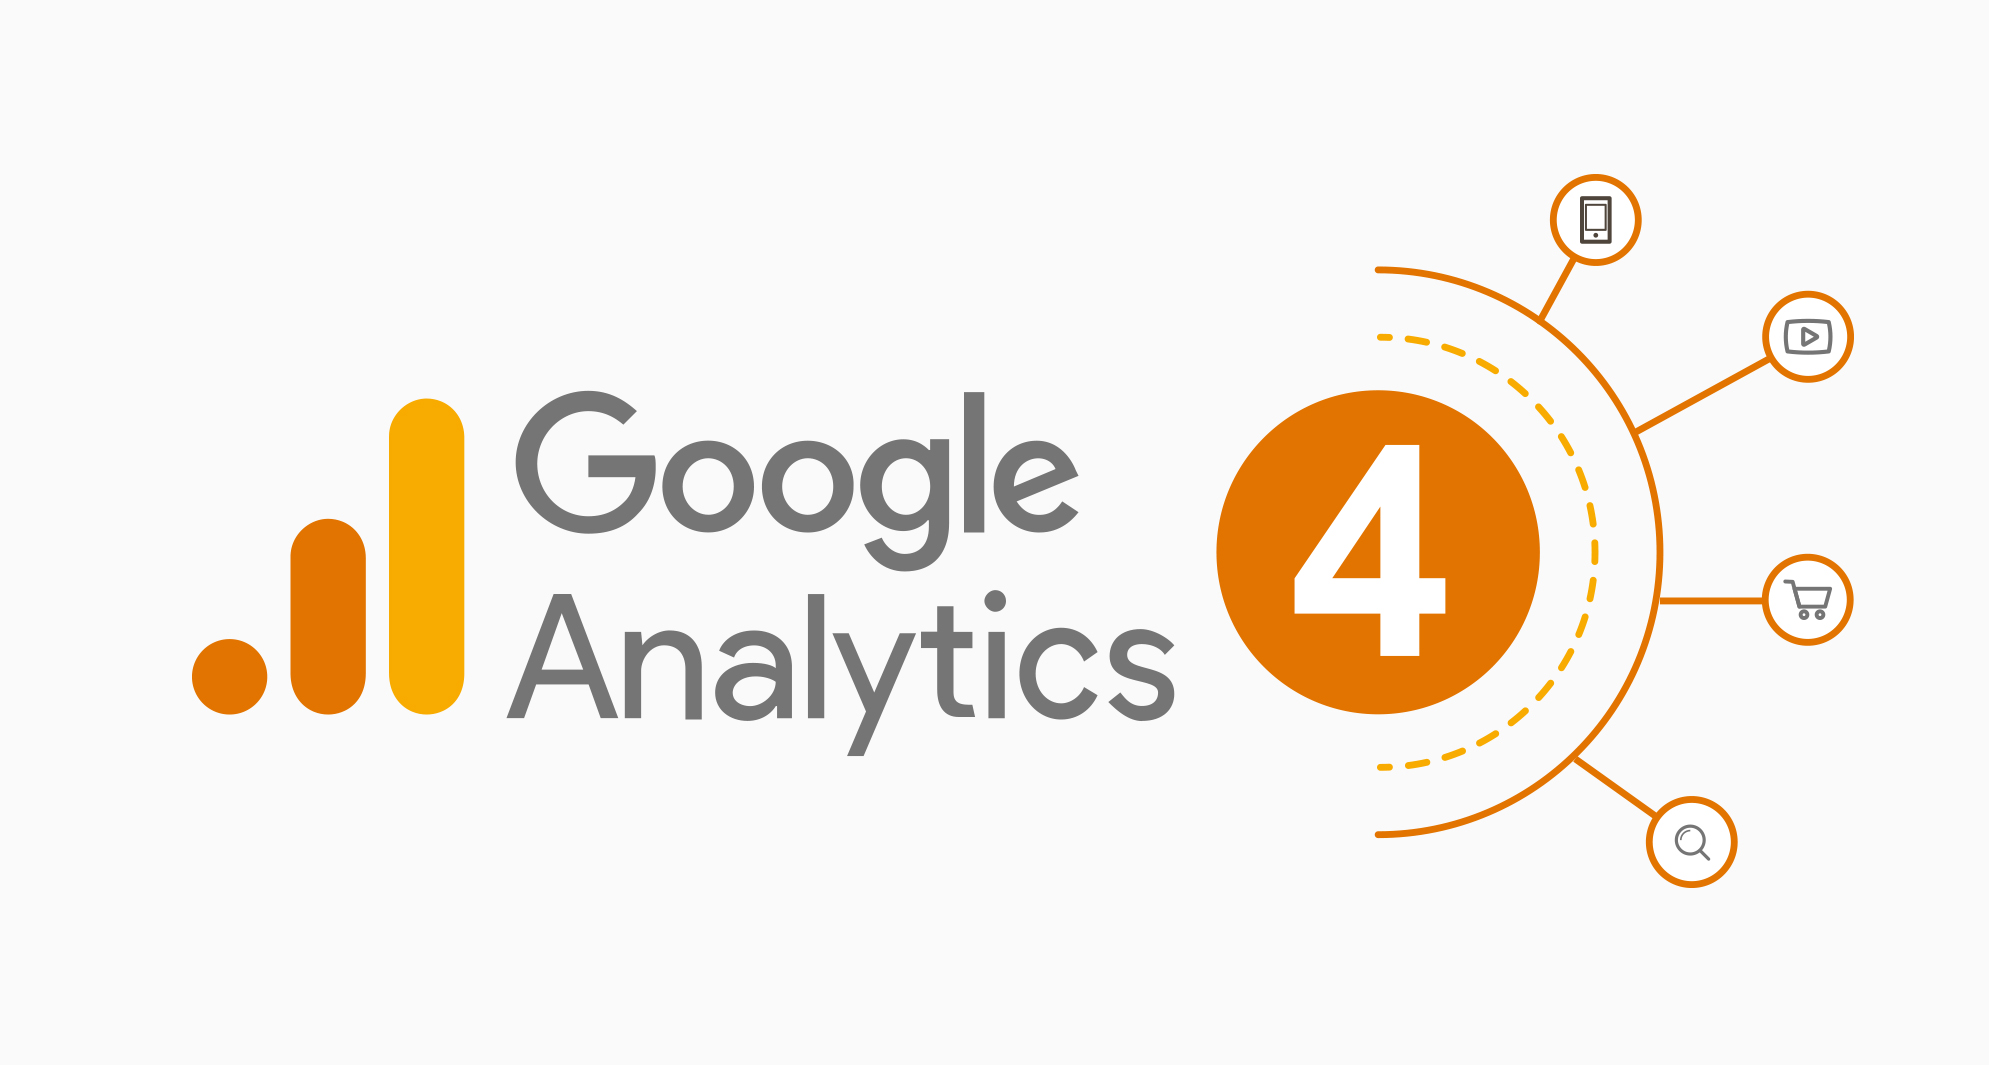 key notes on google analytics 4